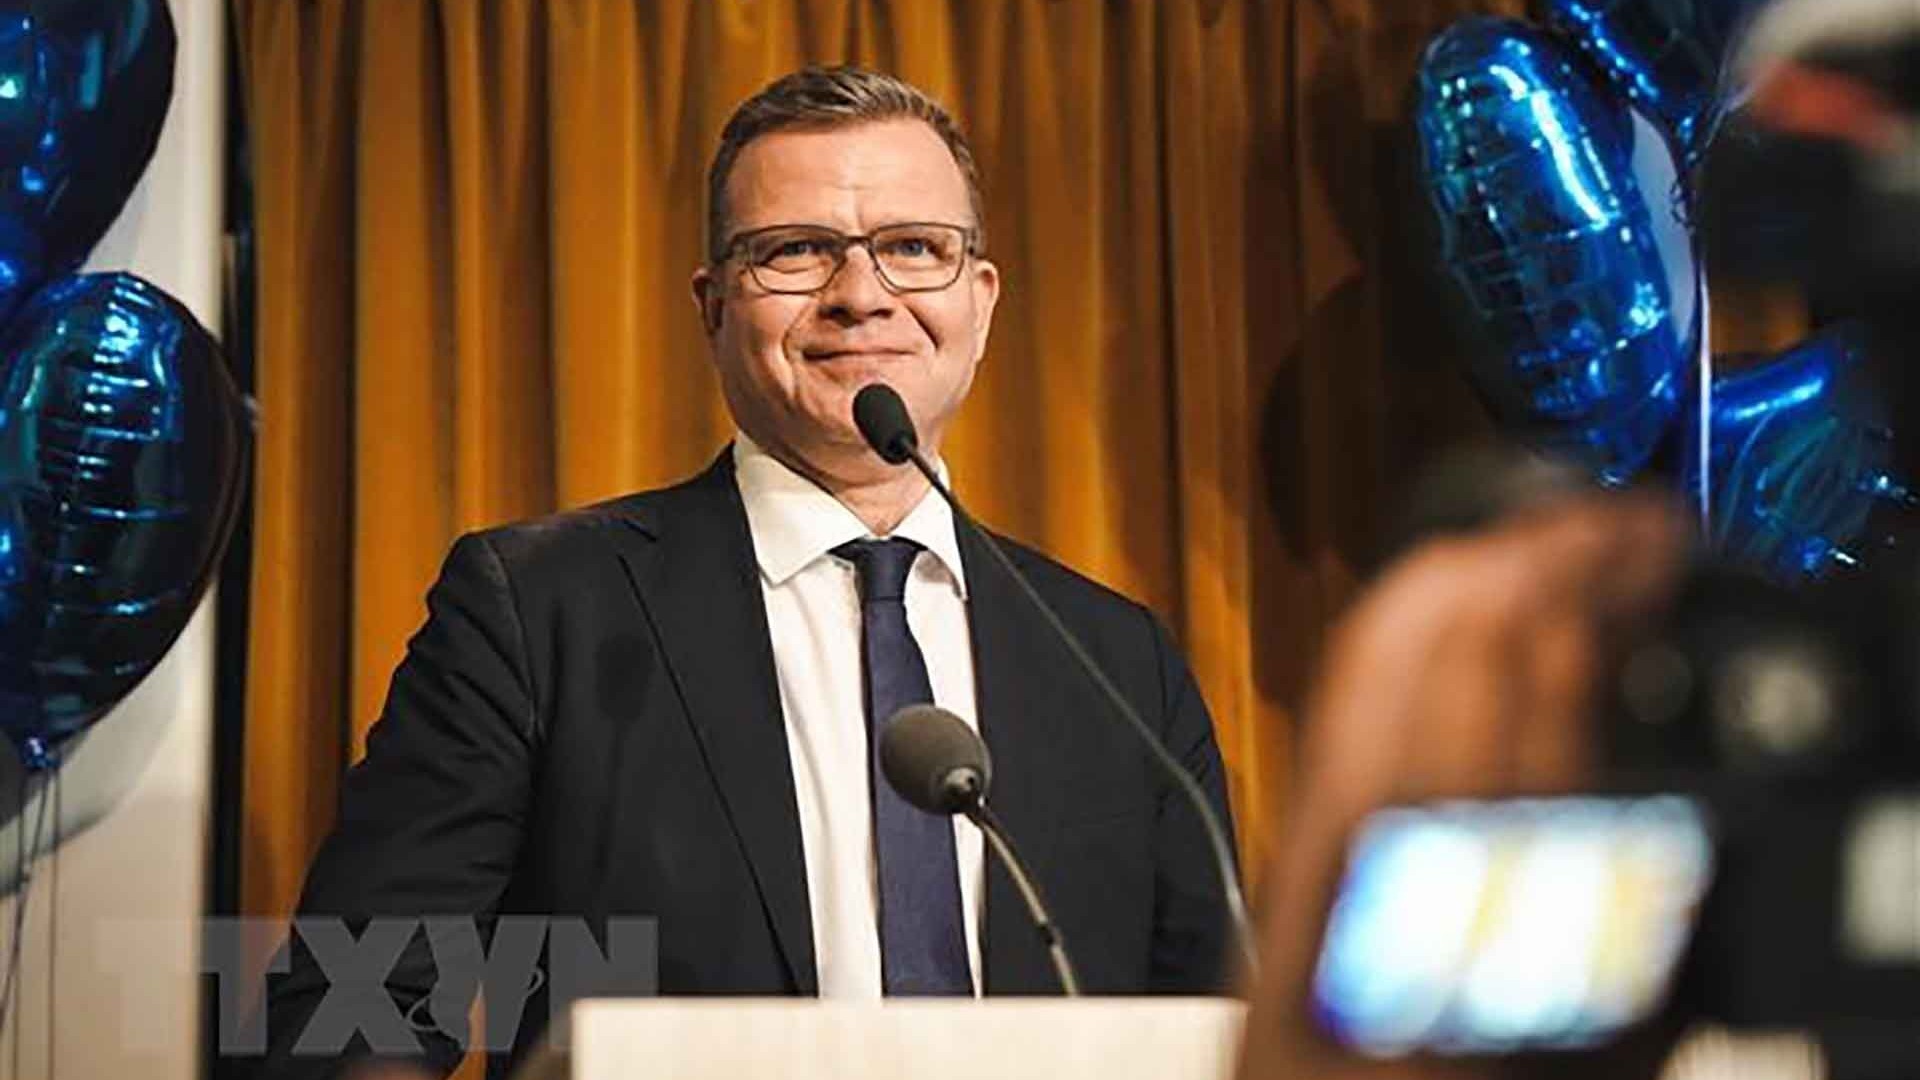 Điện mừng Thủ tướng và Chủ tịch Quốc hội Phần Lan